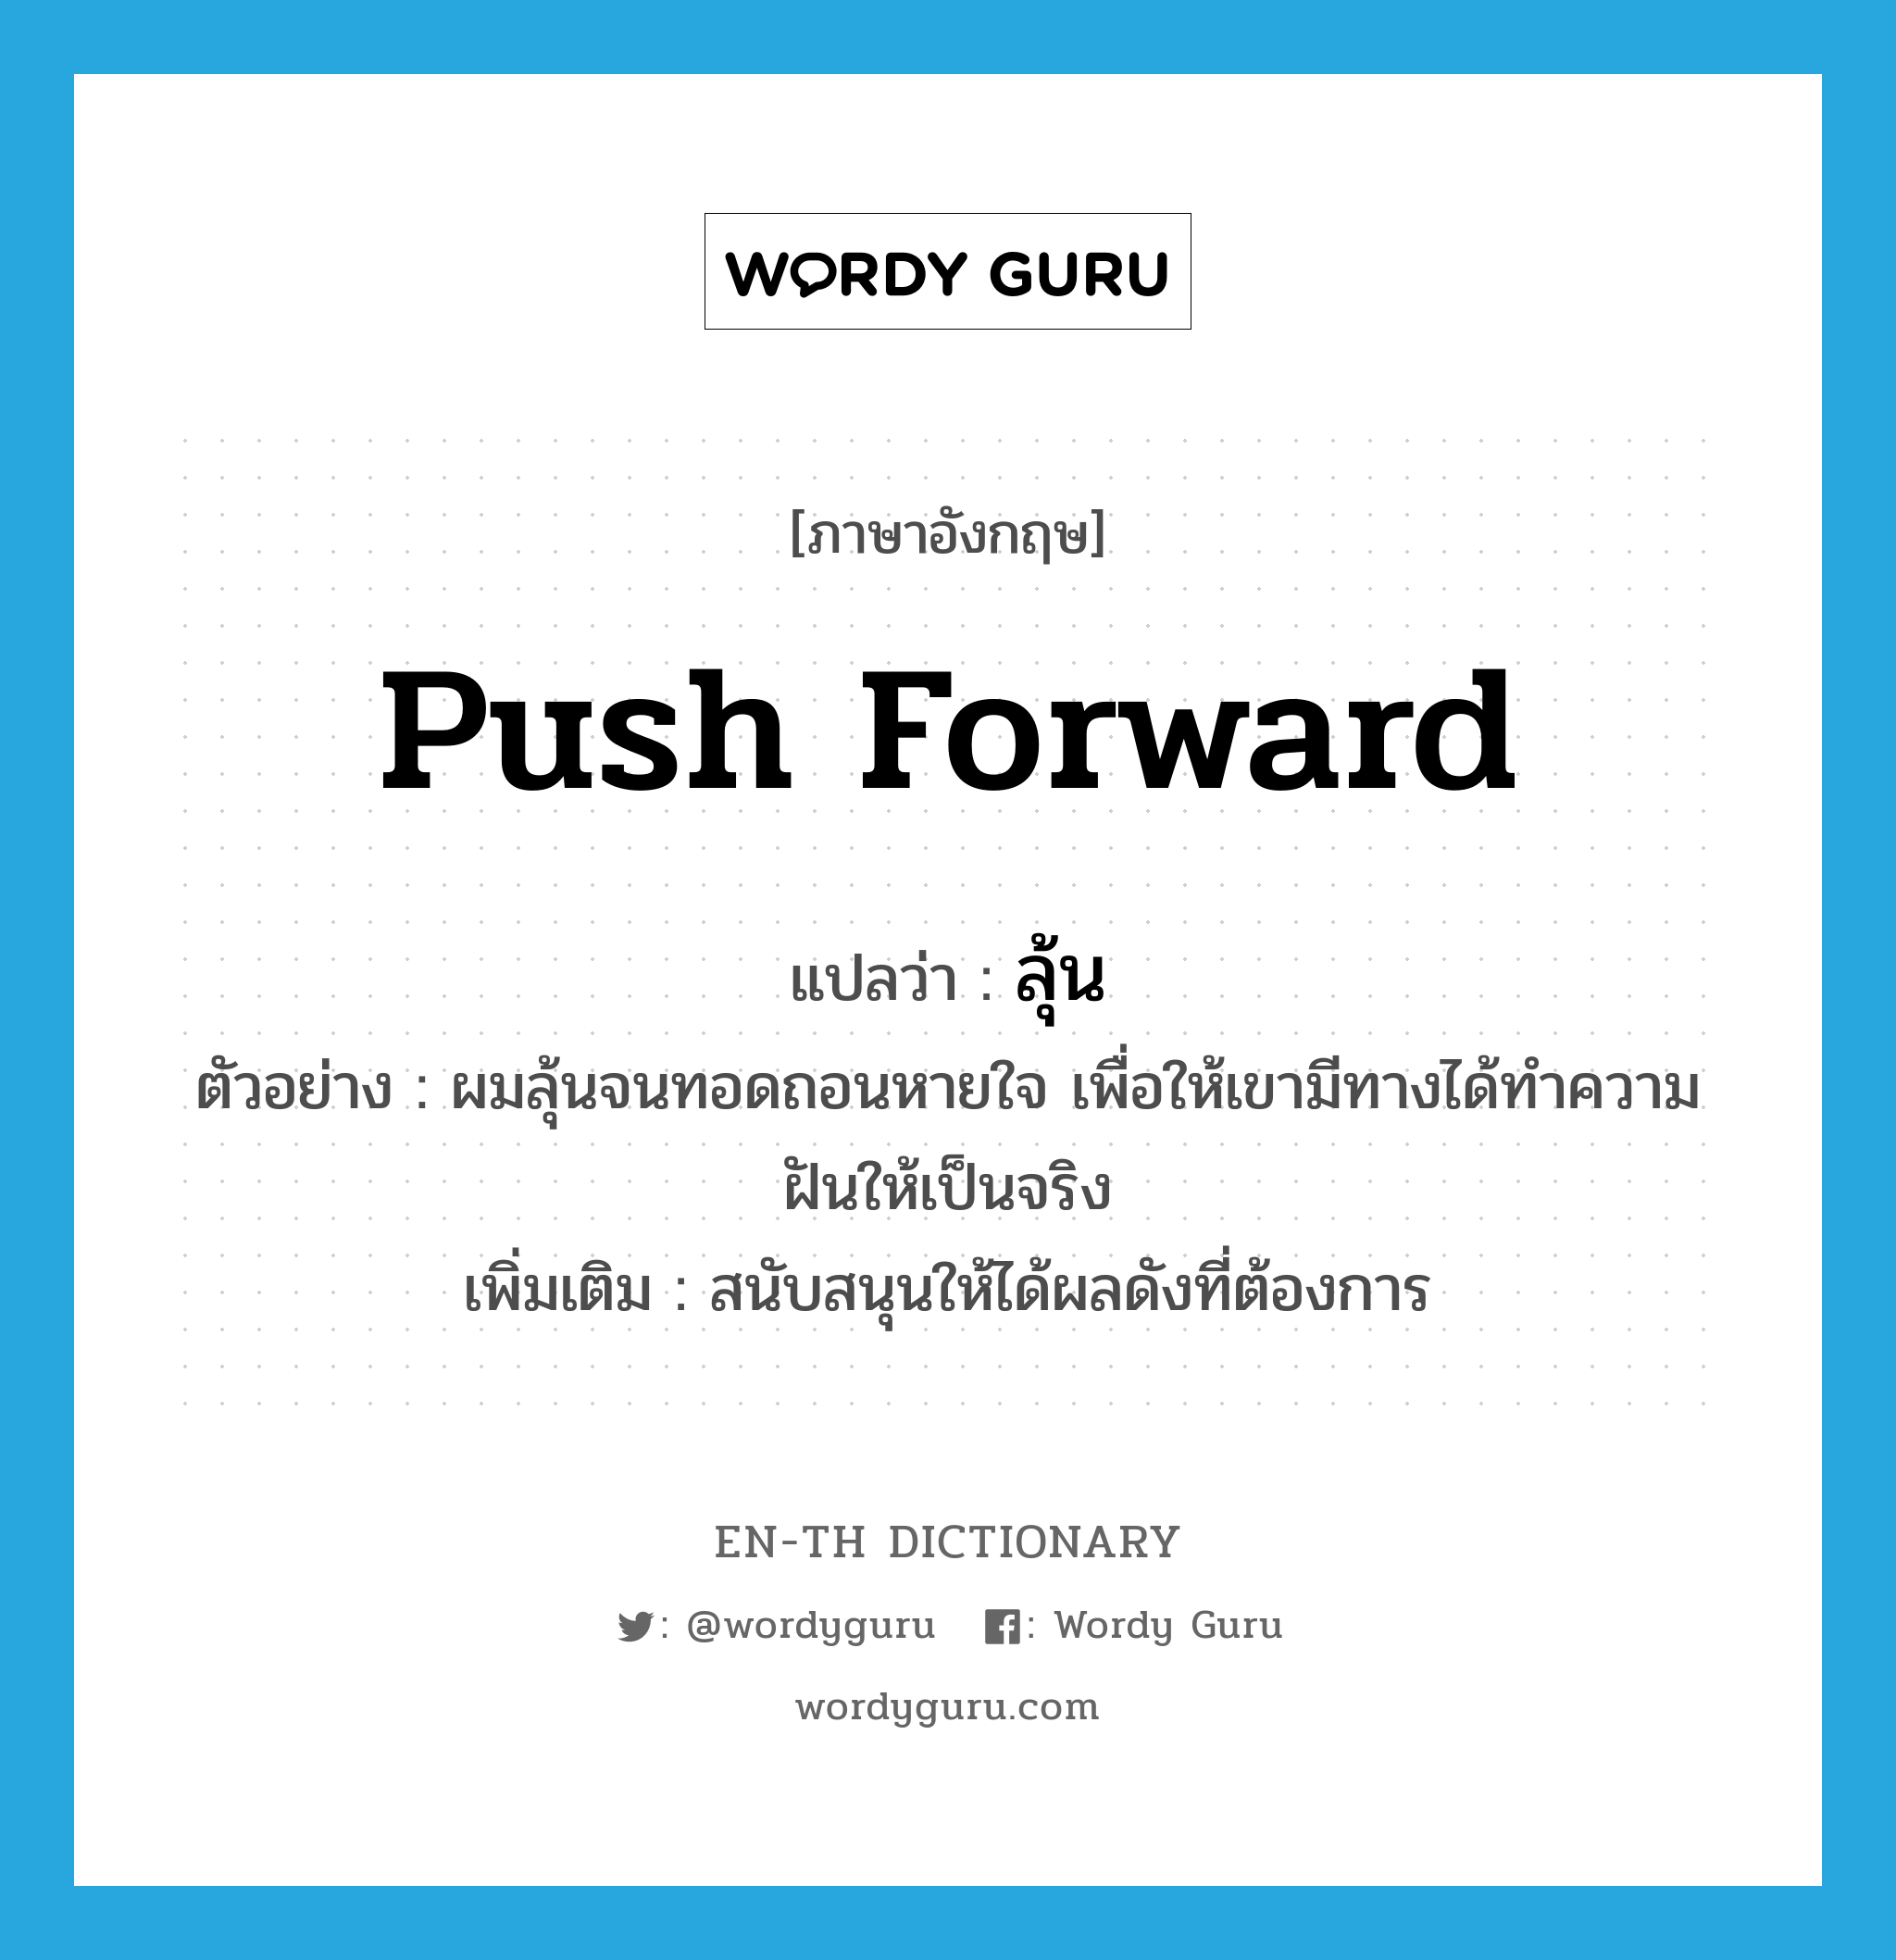 push forward แปลว่า?, คำศัพท์ภาษาอังกฤษ push forward แปลว่า ลุ้น ประเภท V ตัวอย่าง ผมลุ้นจนทอดถอนหายใจ เพื่อให้เขามีทางได้ทำความฝันให้เป็นจริง เพิ่มเติม สนับสนุนให้ได้ผลดังที่ต้องการ หมวด V